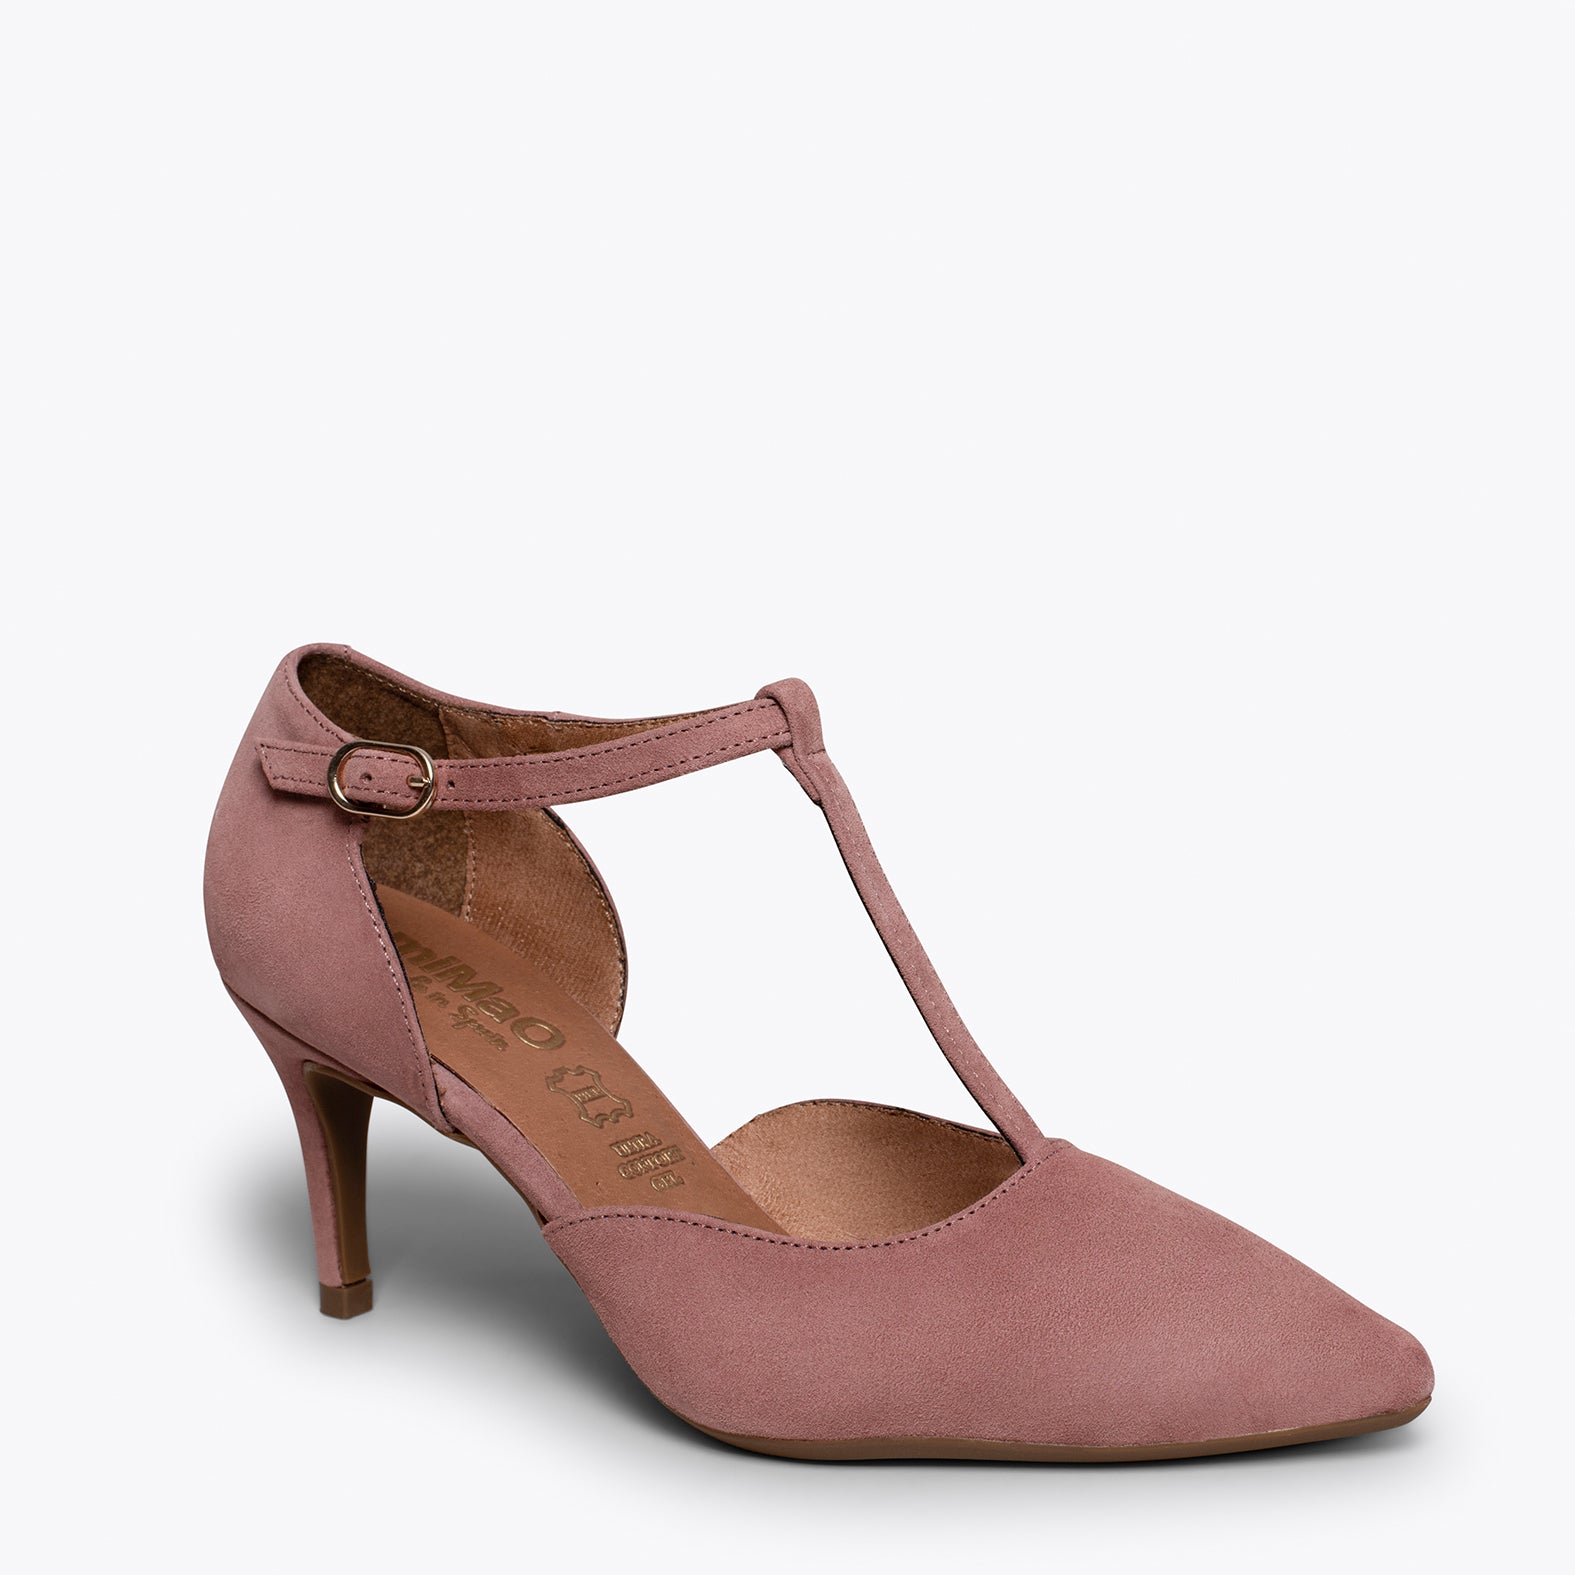 COCKTAIL – ASH PINK elegant mid heel shoes